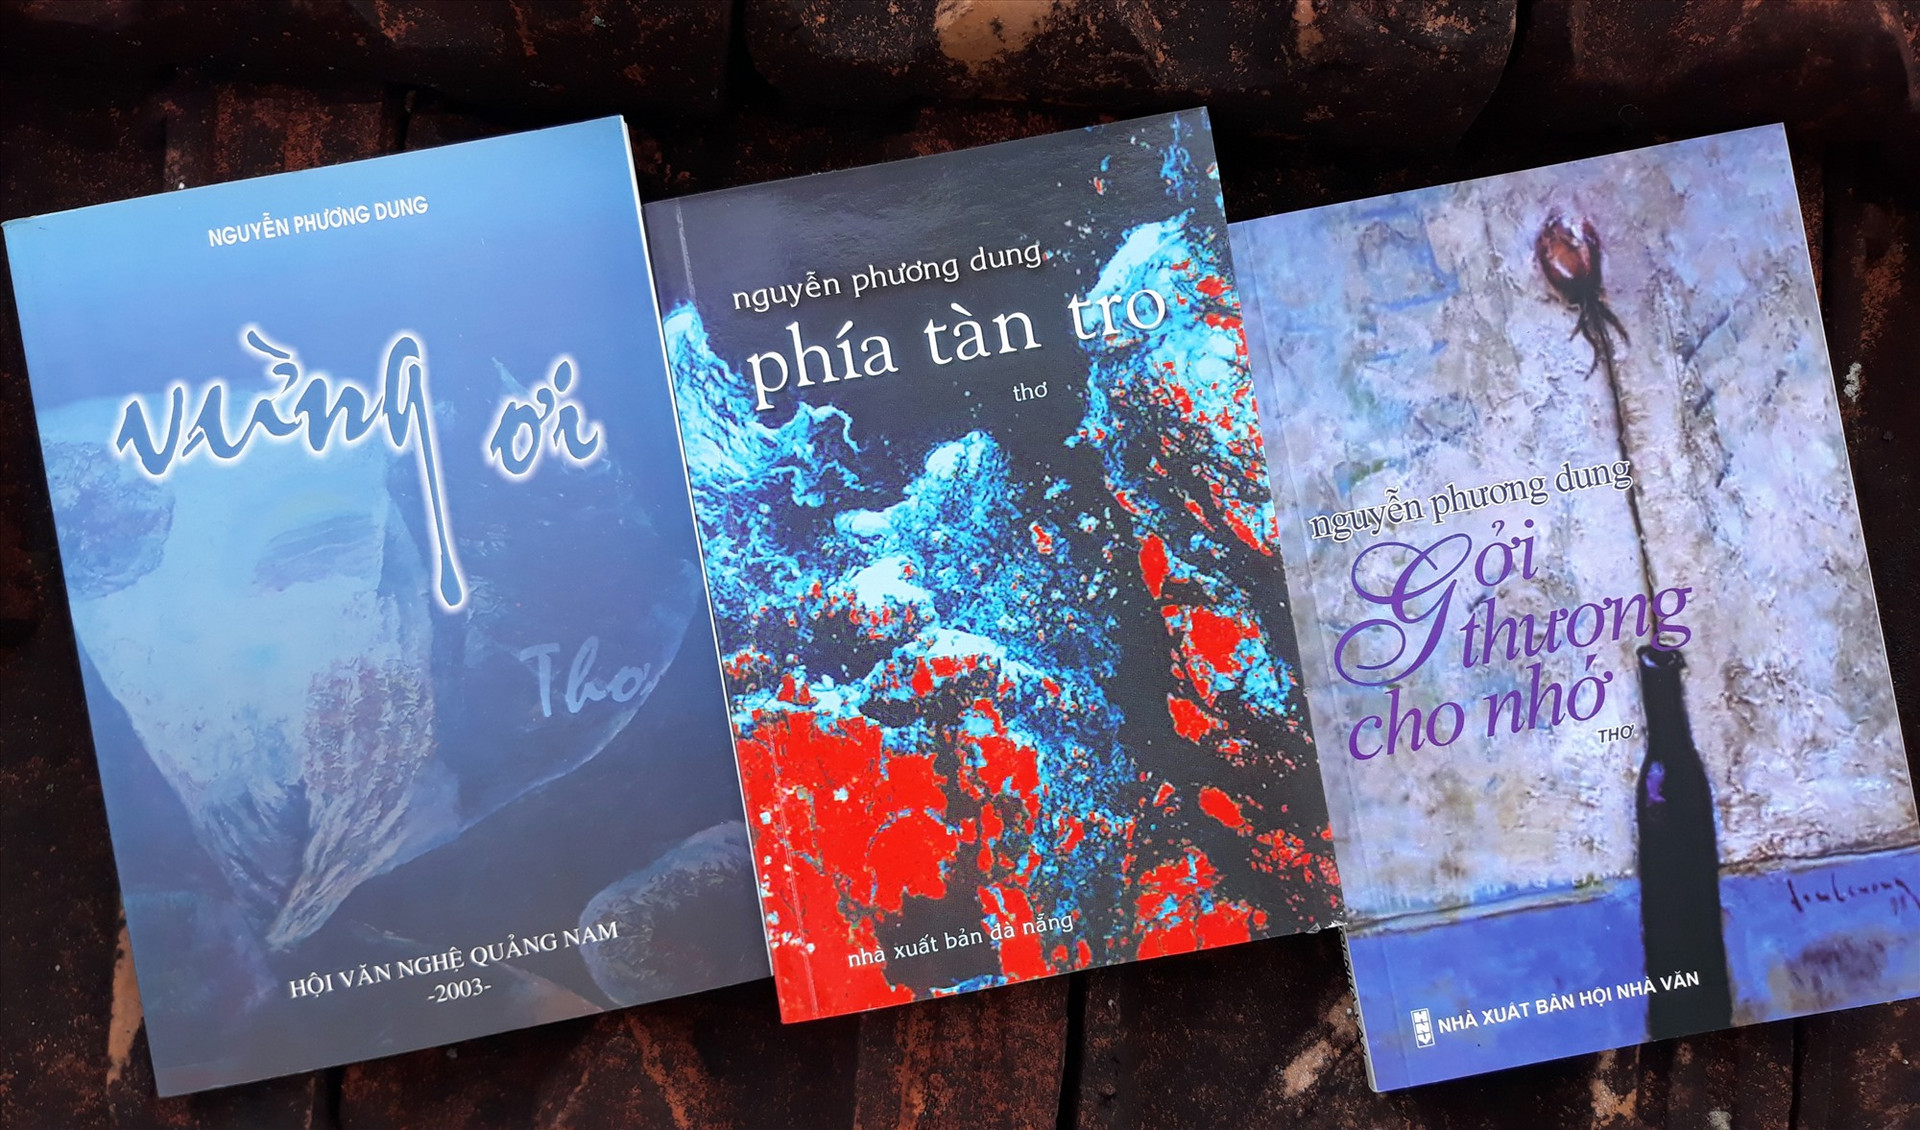 Tập thơ “Gởi thương cho nhớ” và các ấn phẩm khác của Nguyễn Phương Dung. Ảnh: B.A